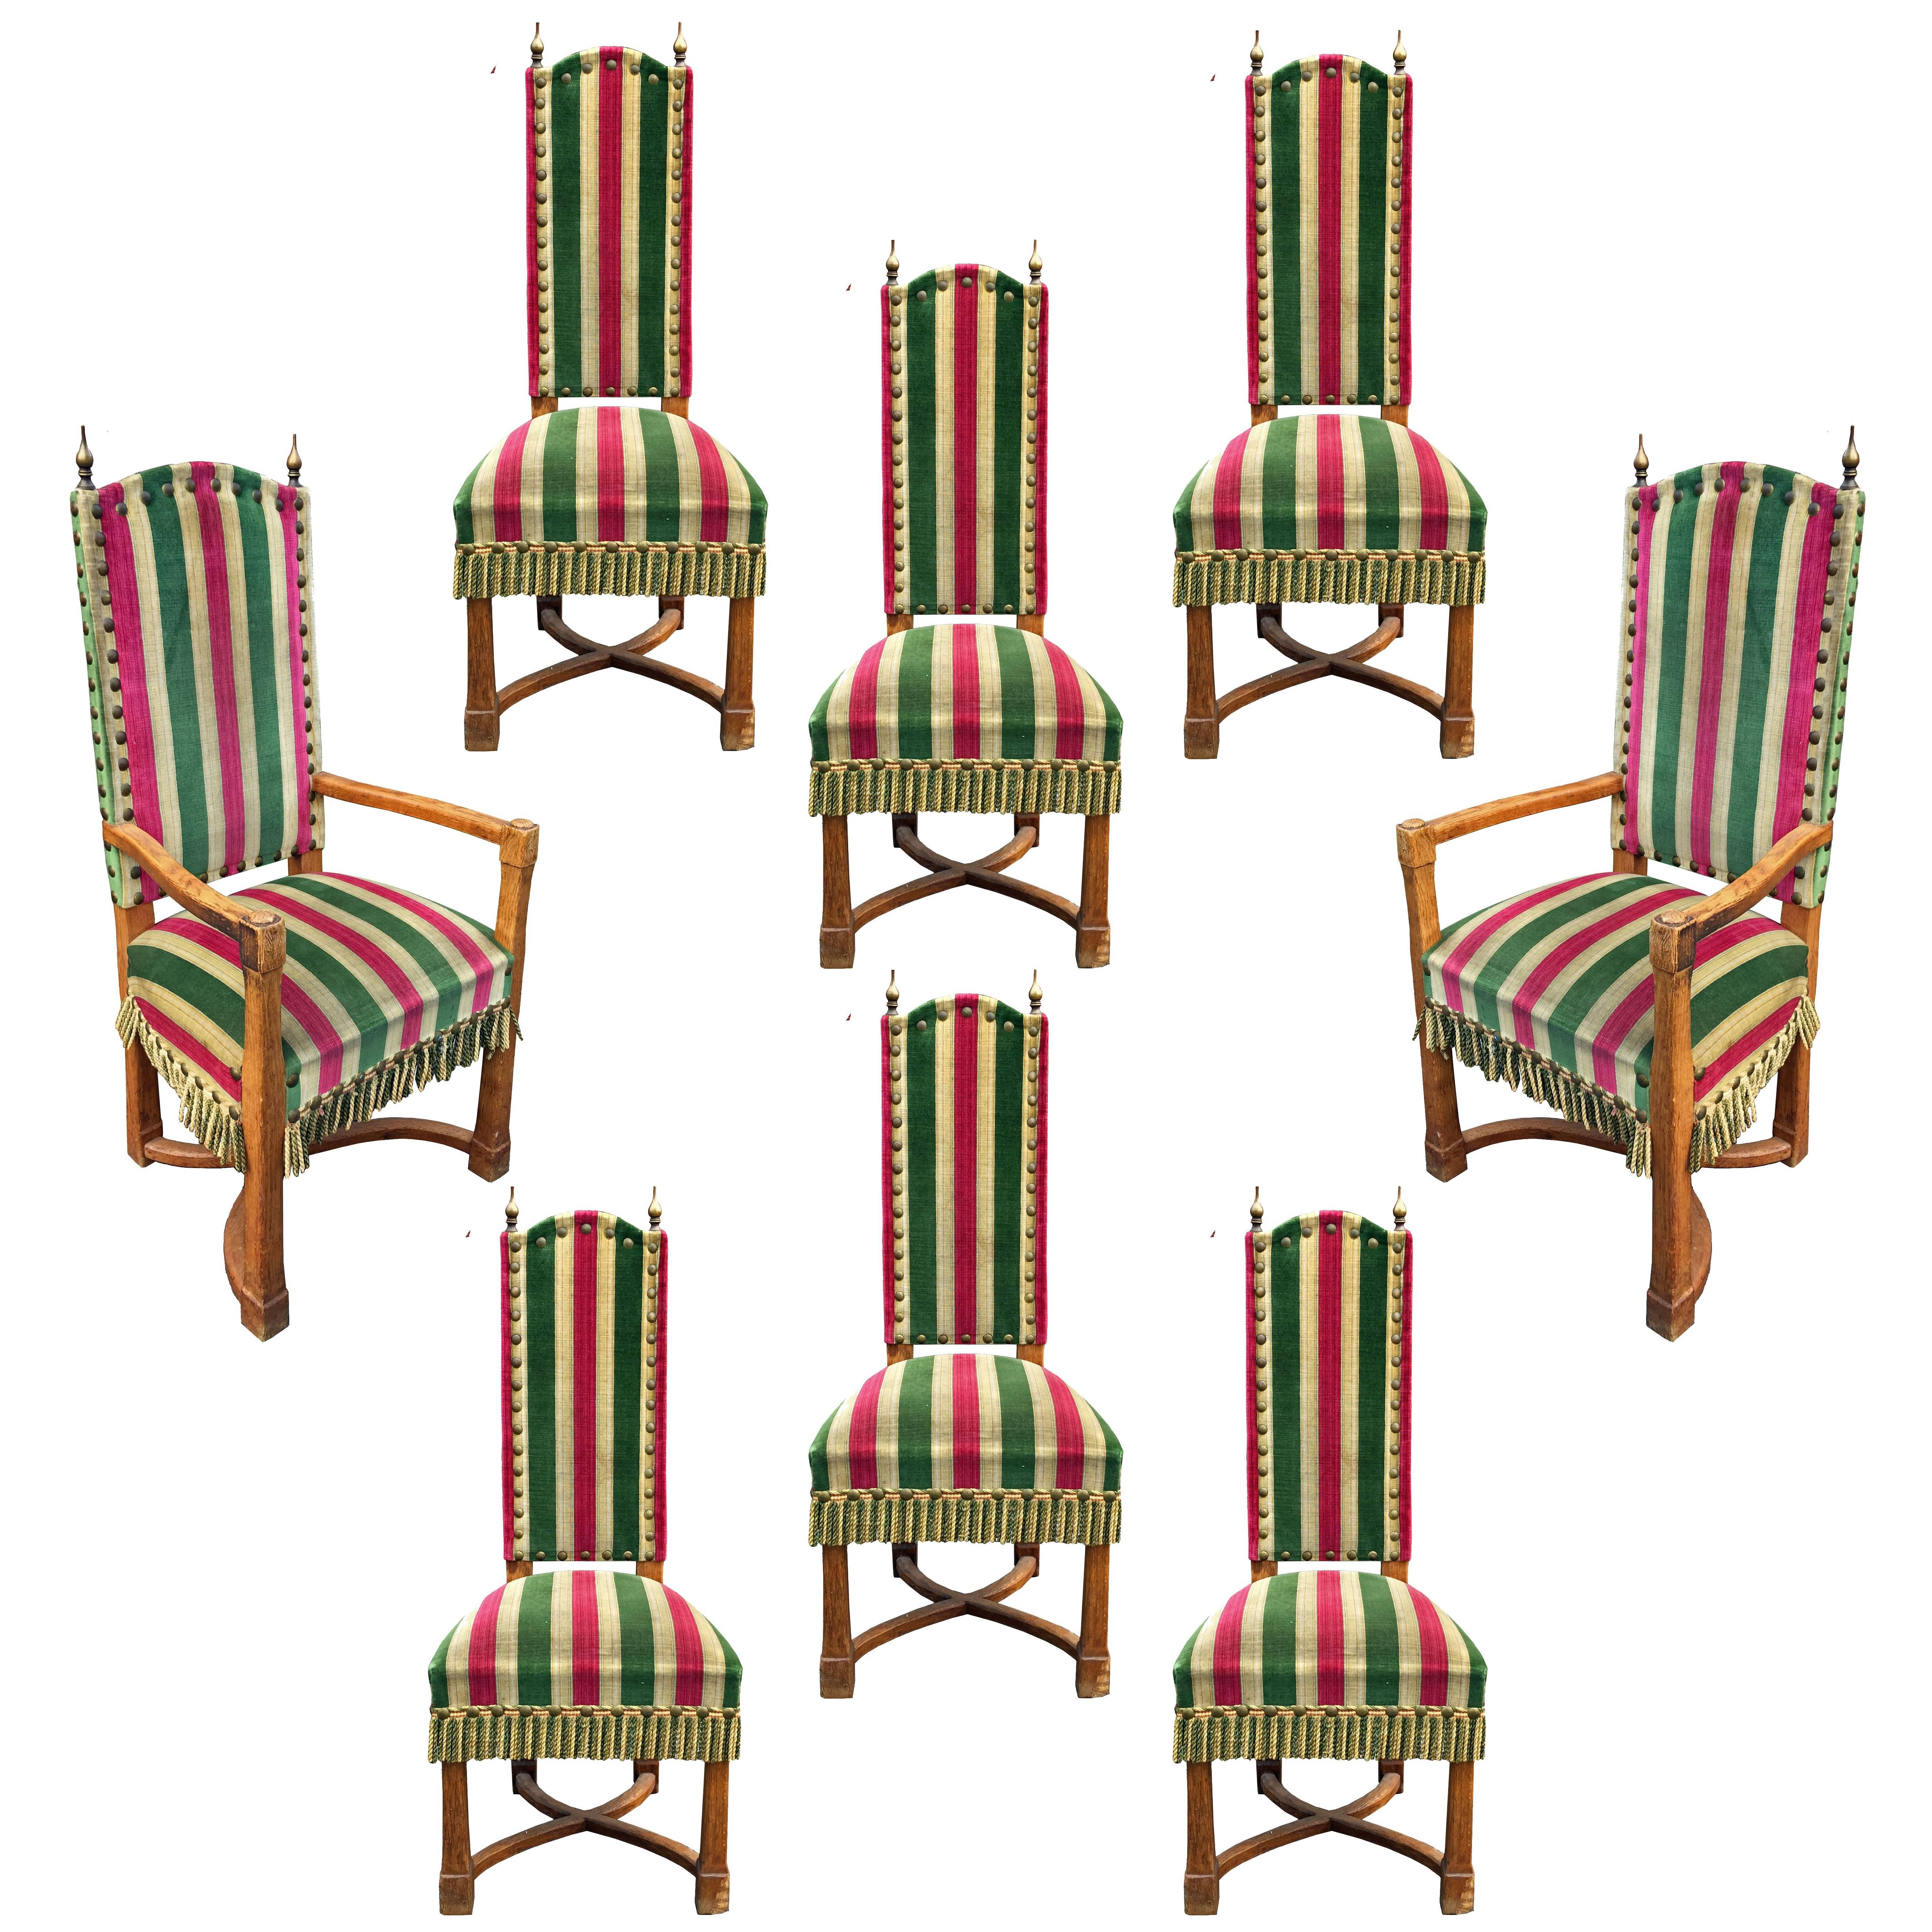 Ensemble de huit chaises brutalistes en chêne, laiton et velours, datant d'environ 1950